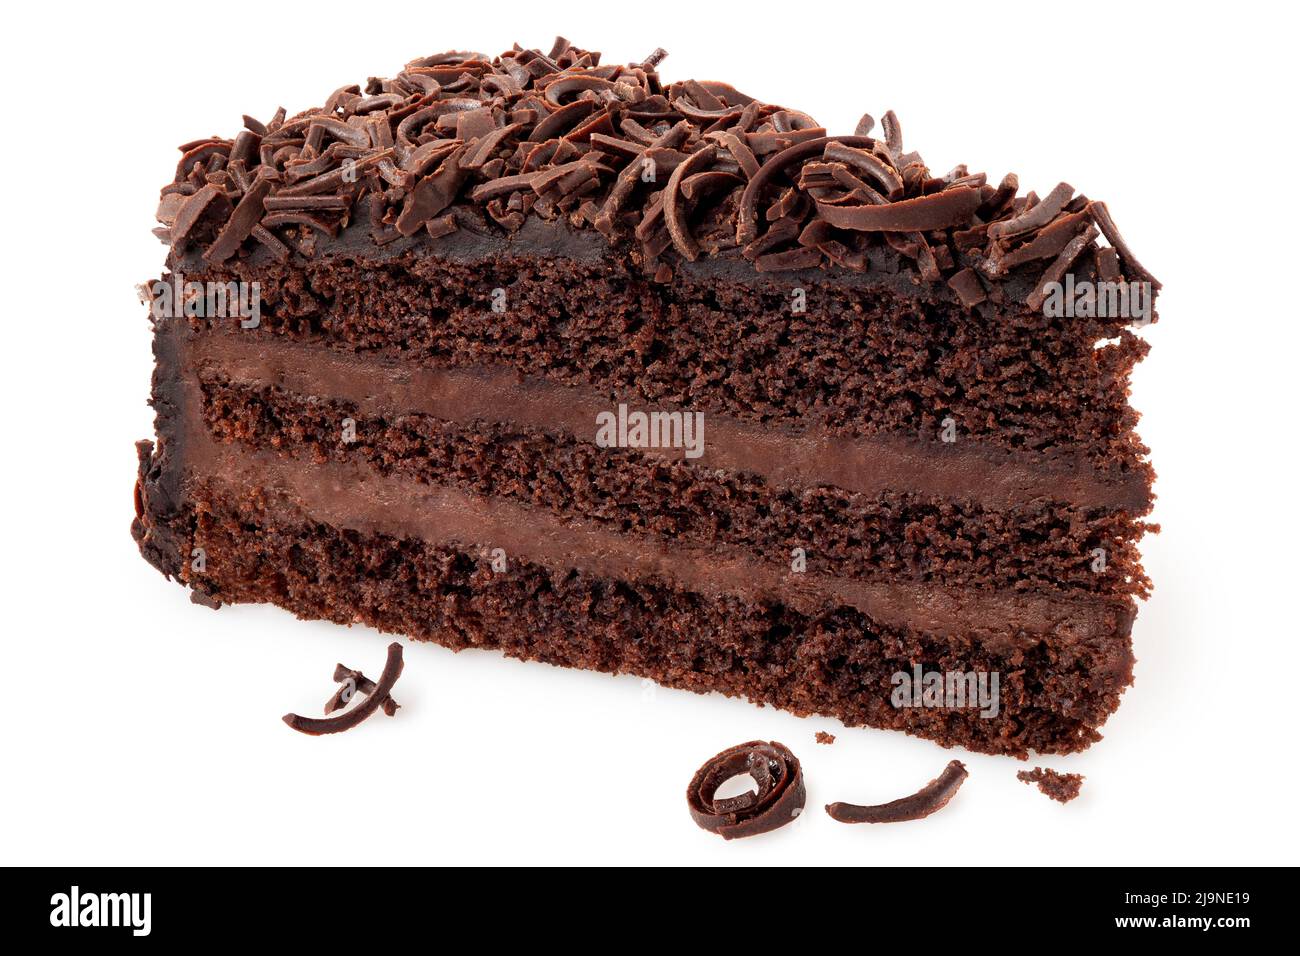 Scheibe Schokoladenkuchen mit Sahnefüllung und auf Weiß isoliertem Schokoladenspan. Stockfoto